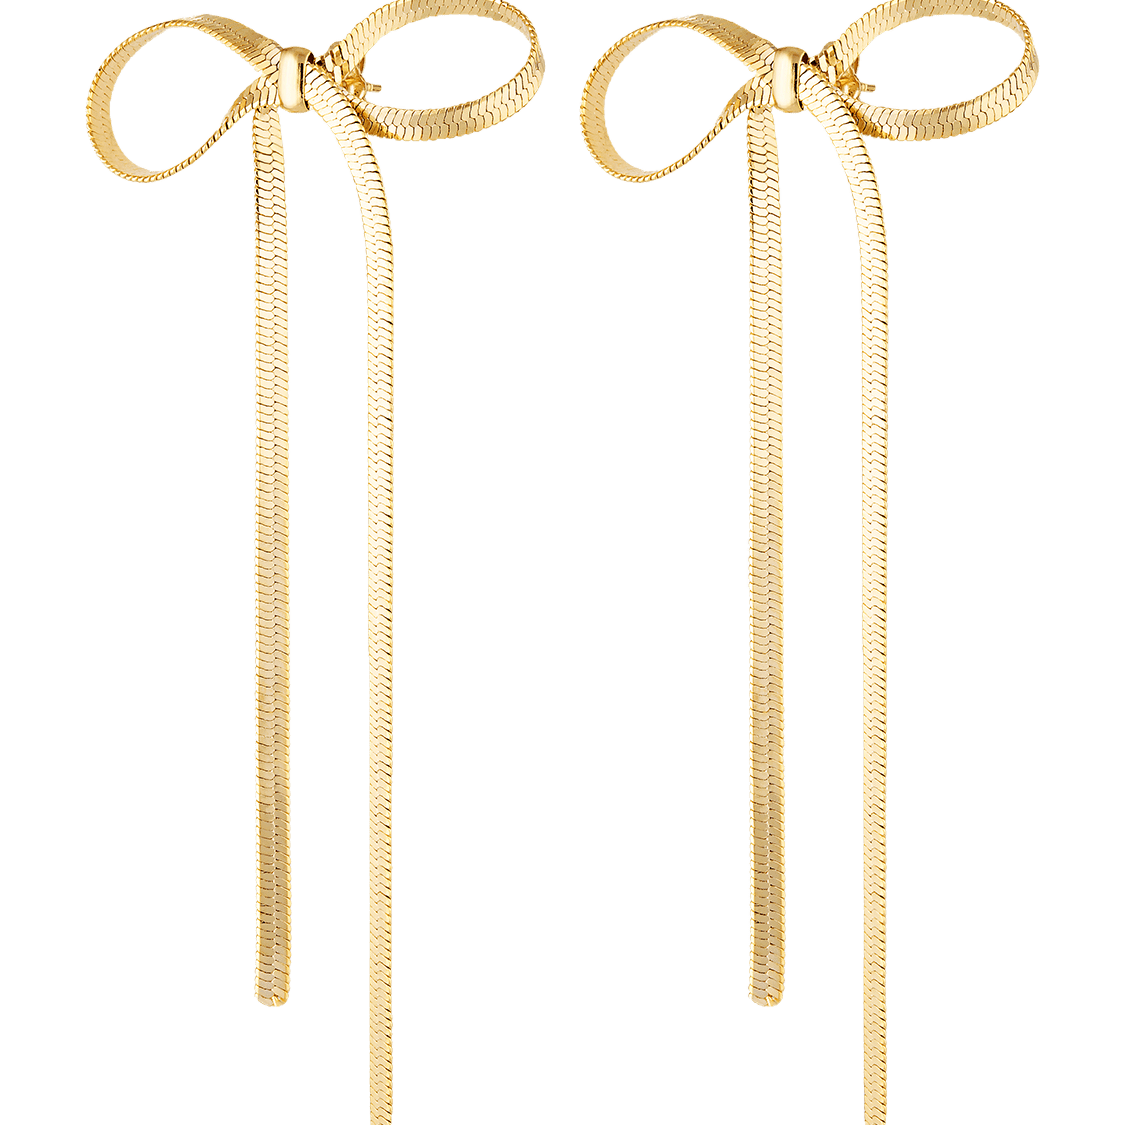 Bow earrings in long gold ribbon style